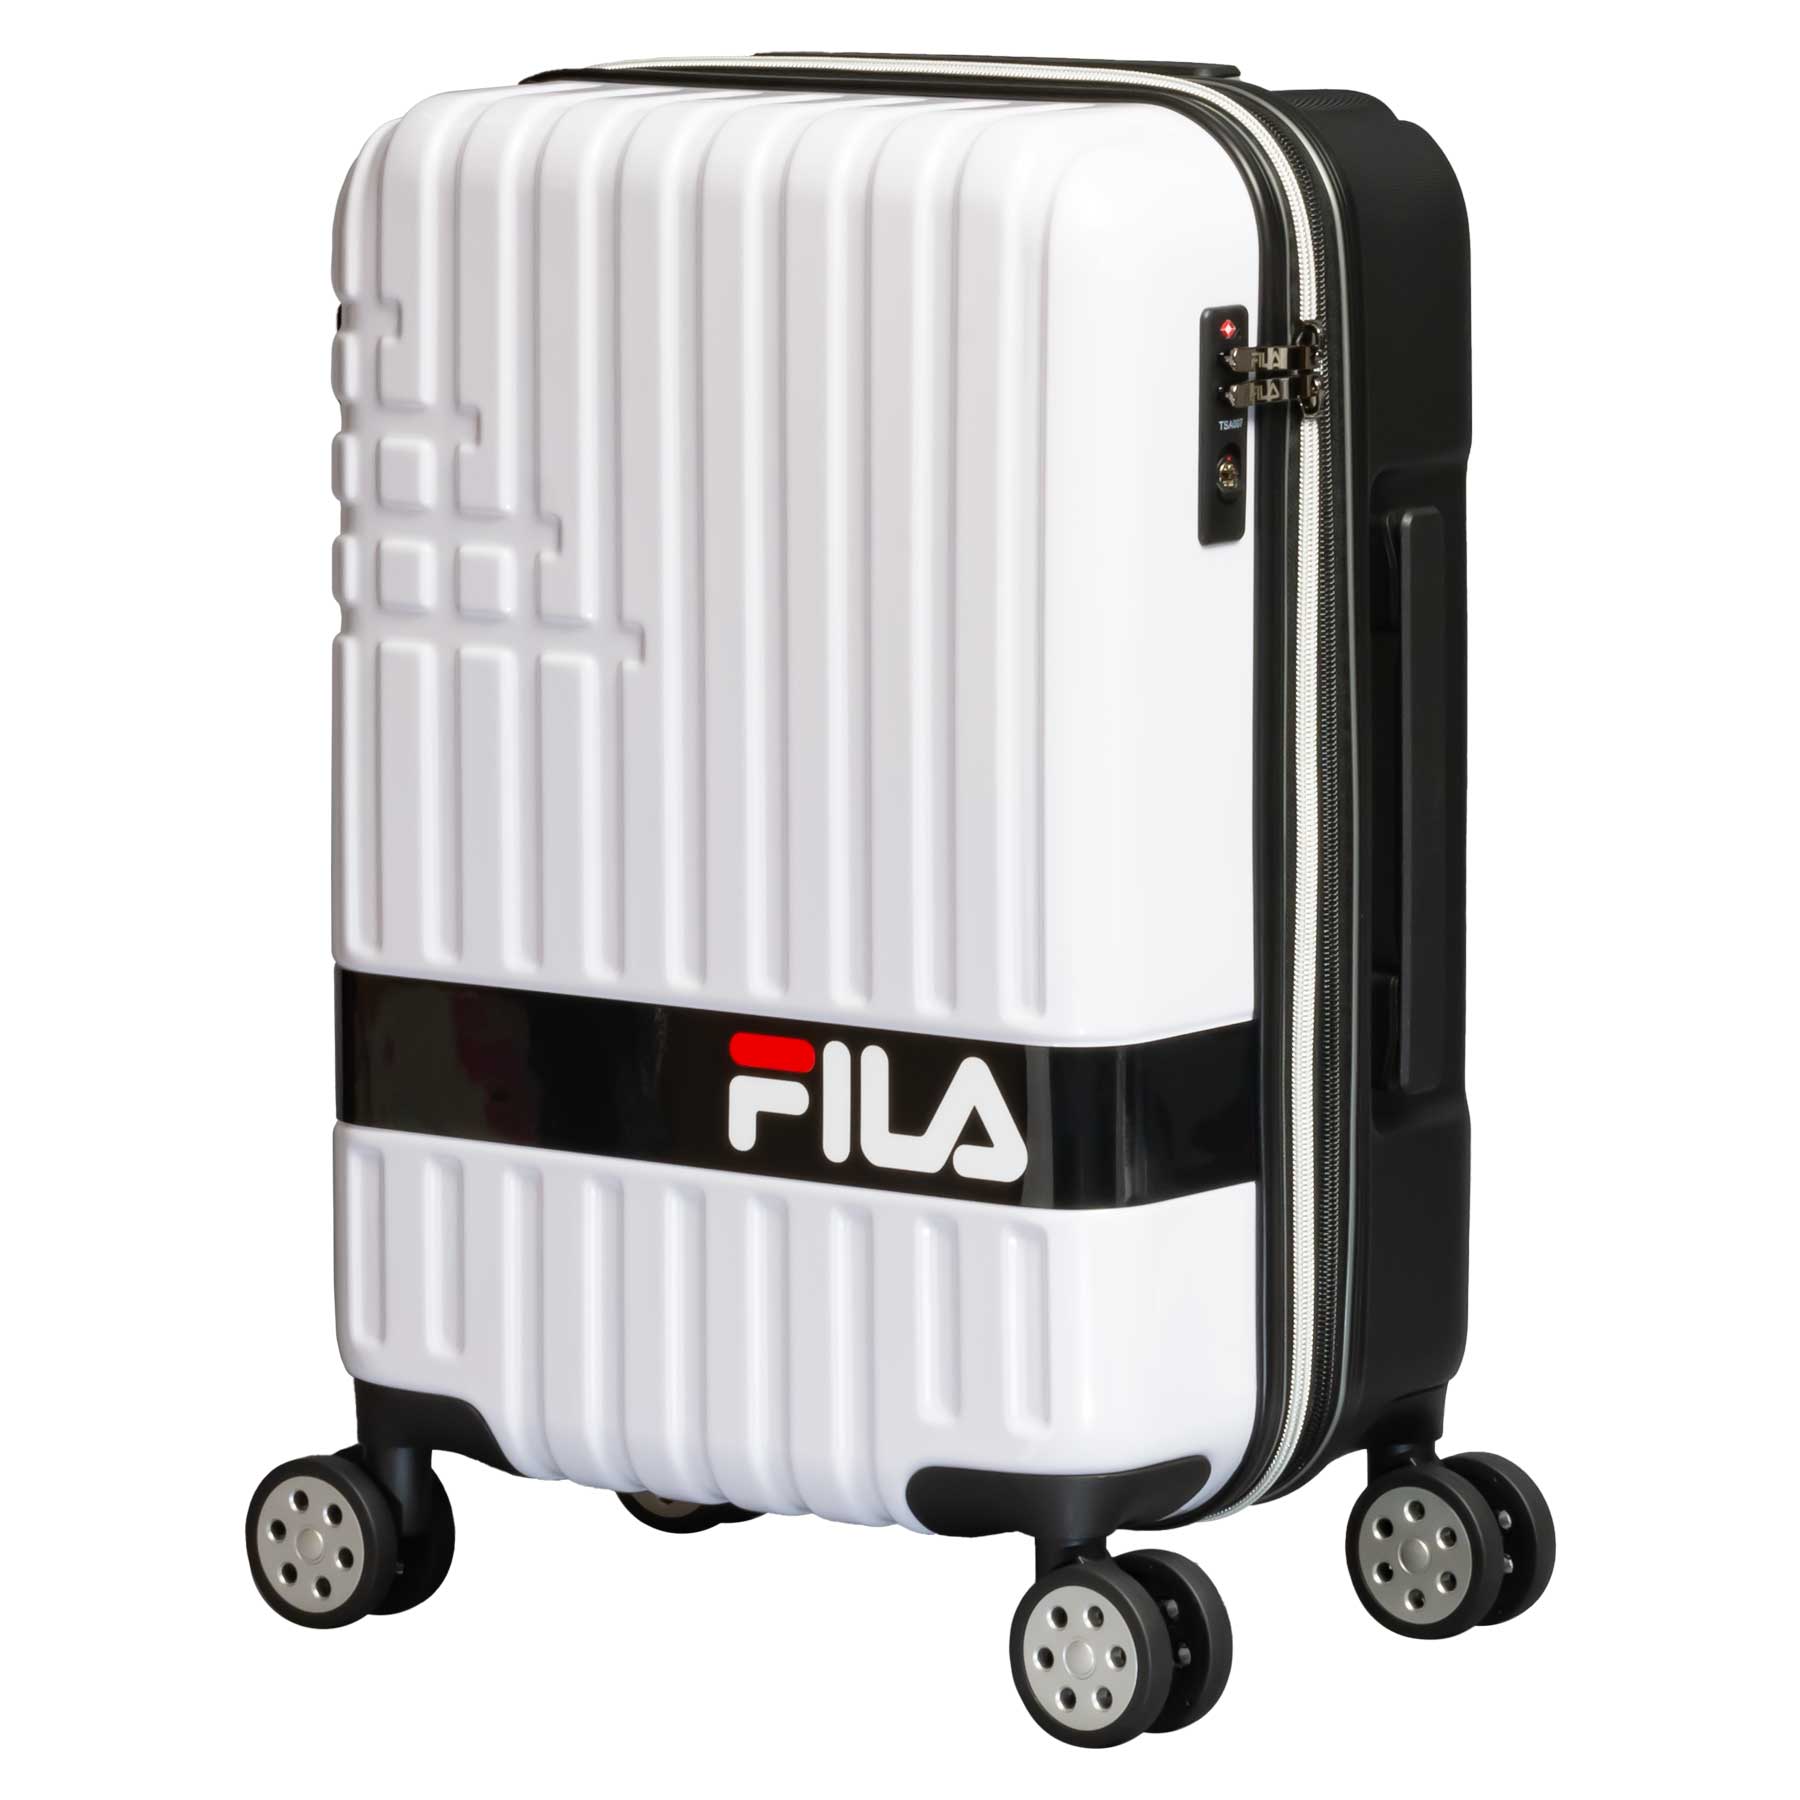 スーツケース Sサイズ 35〜39L FILA フィラ 機内持ち込み 1〜3泊 拡張機能 キャリーケース 860-1870